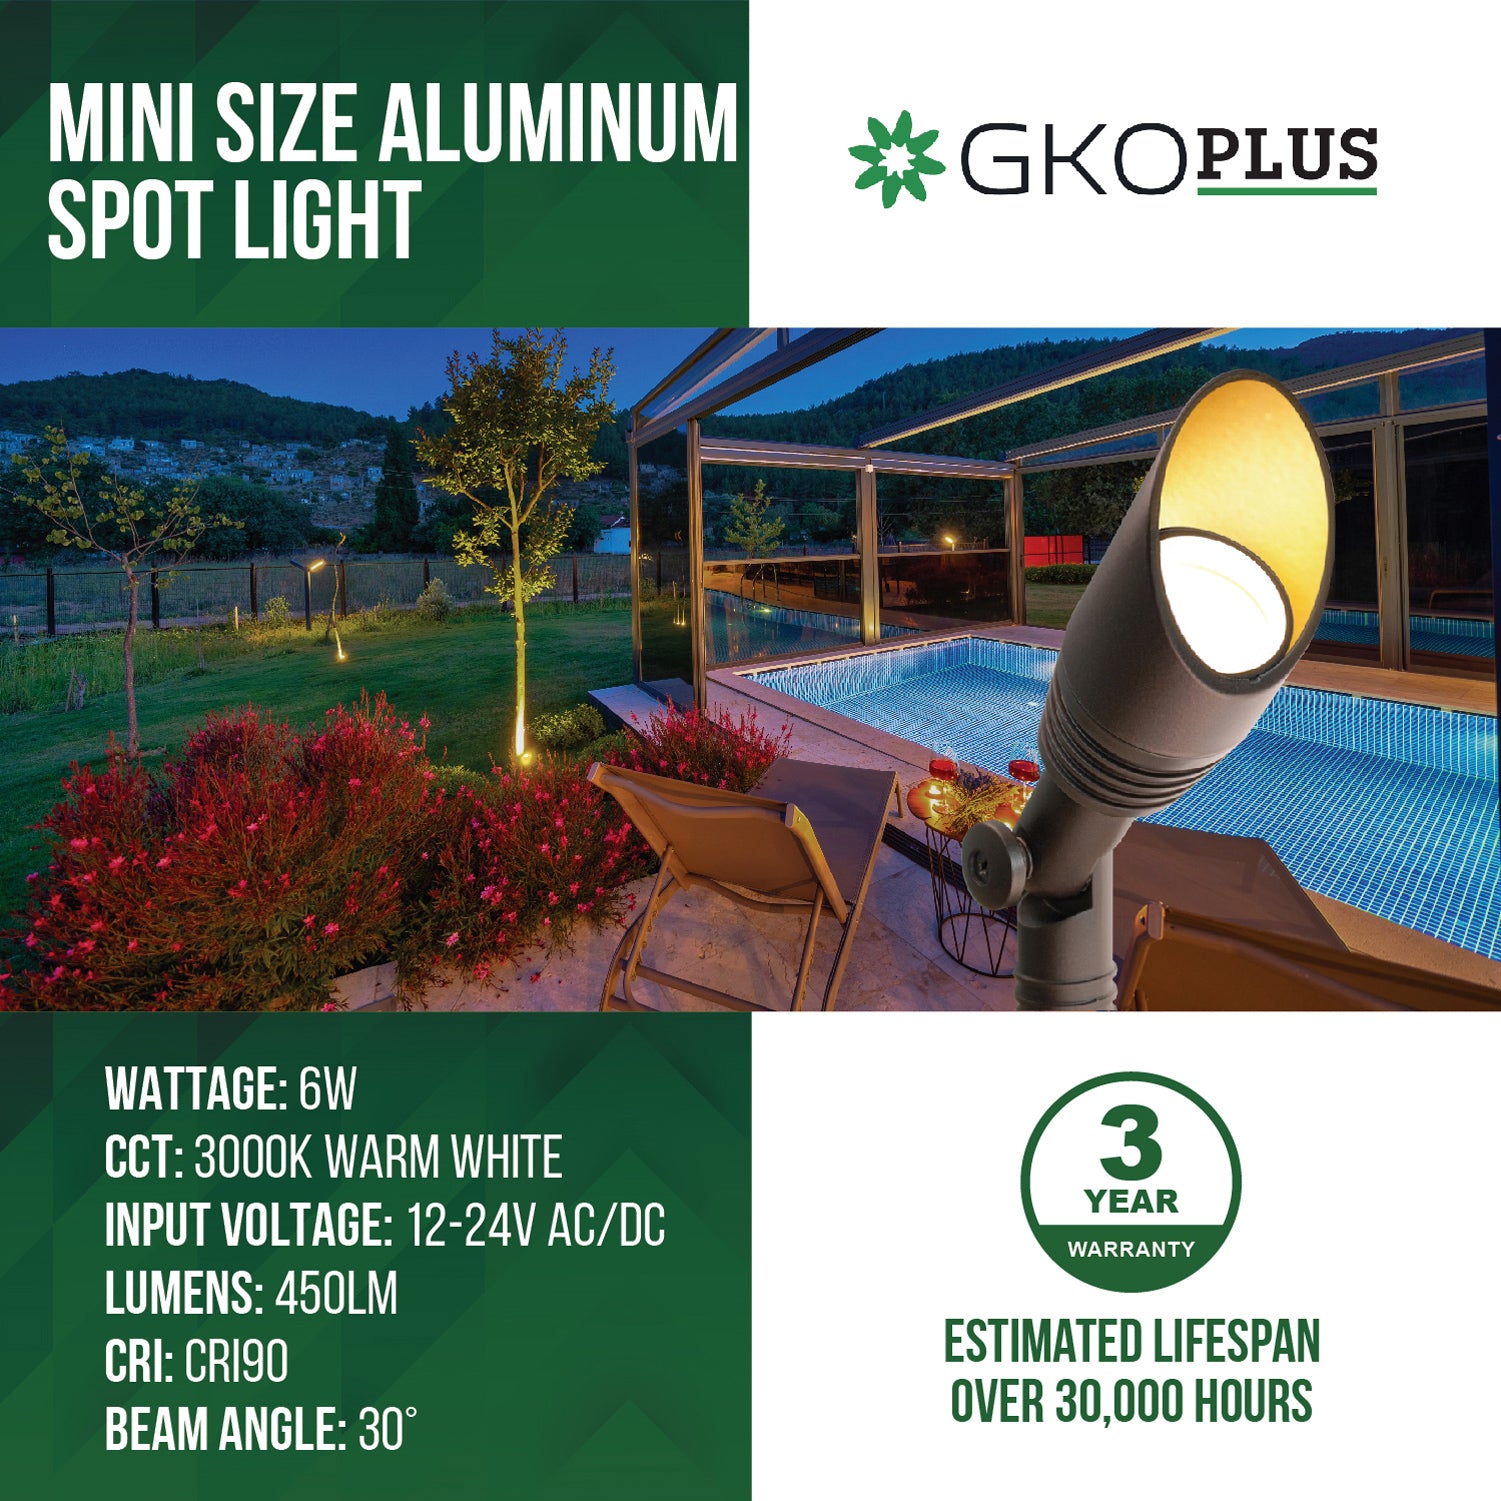 Low Voltage Mini Size Aluminum Landscape Spotlight, 12-24V AC/DC, 3000K, Brown